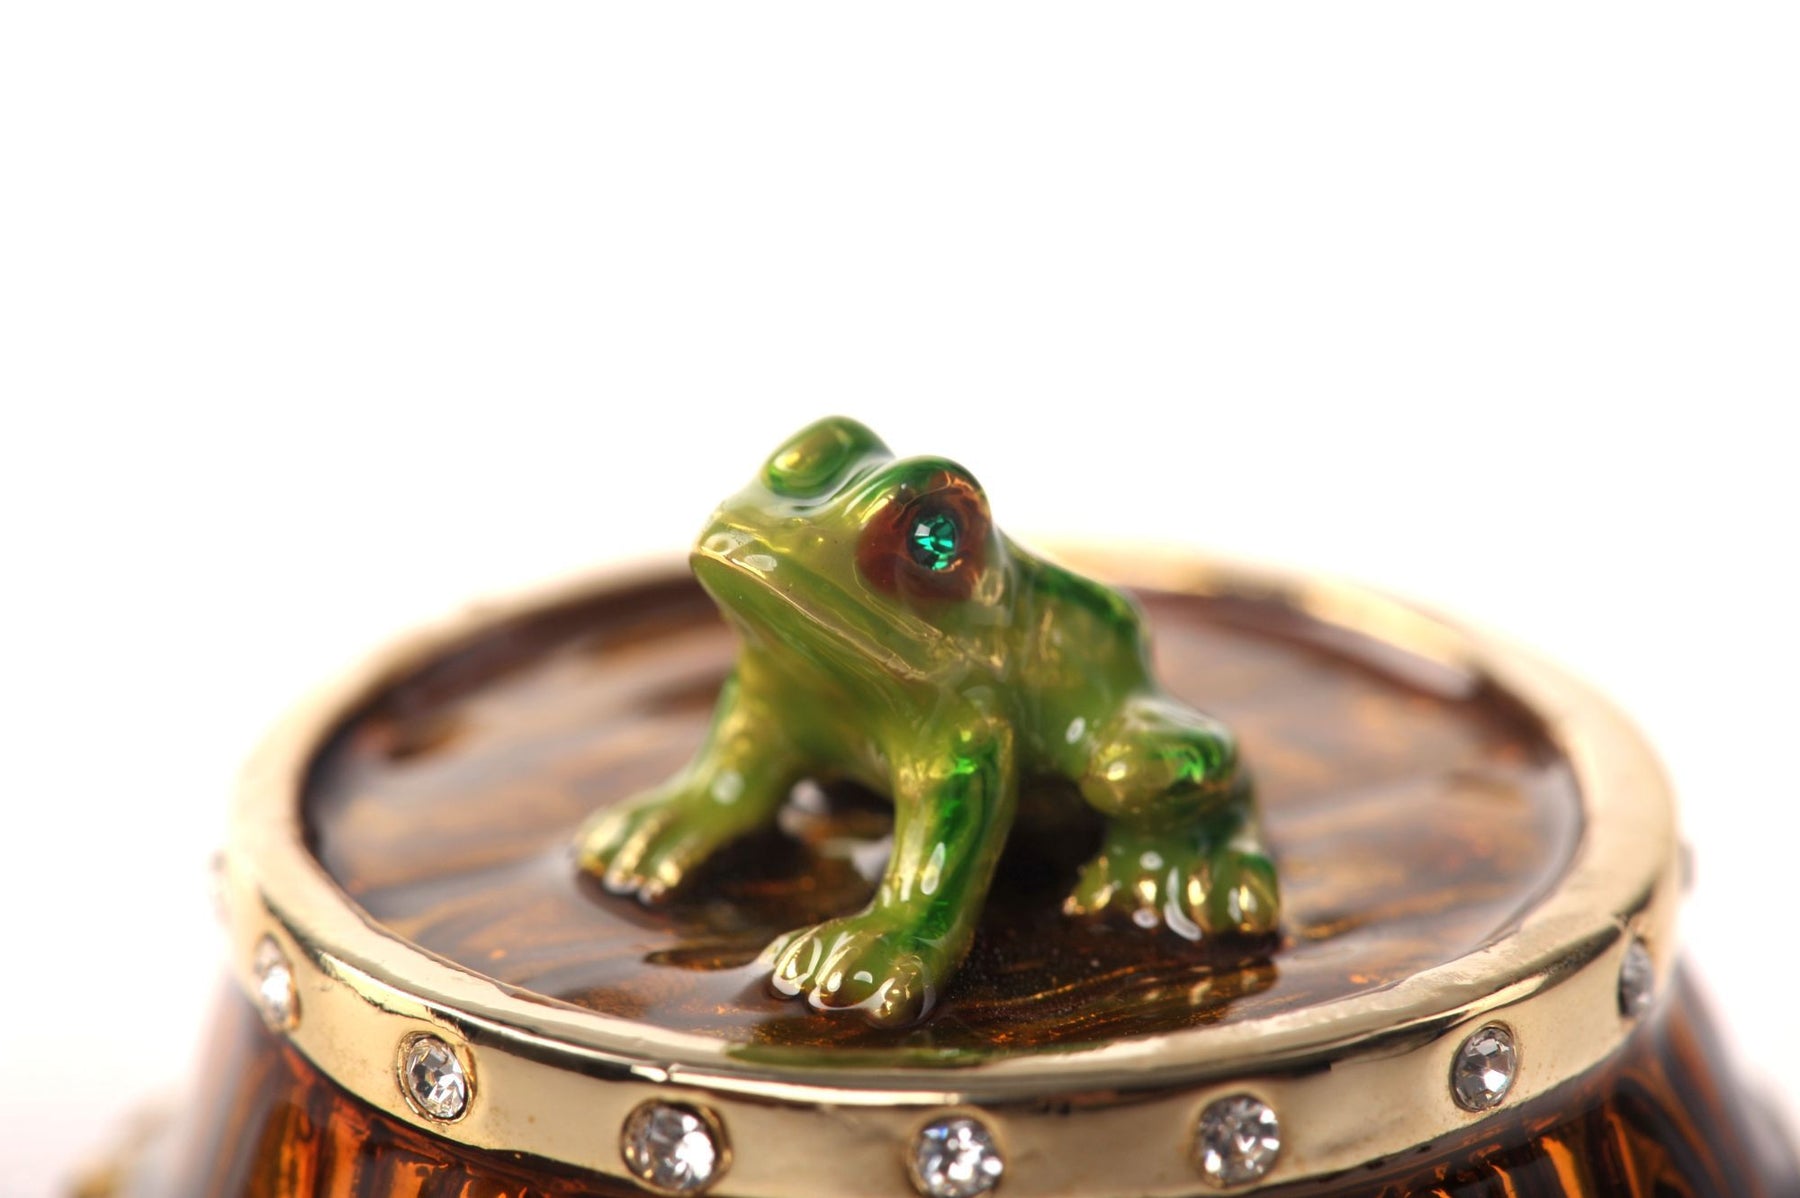 Keren Kopal Frog & Lizard on a Barrel  58.50